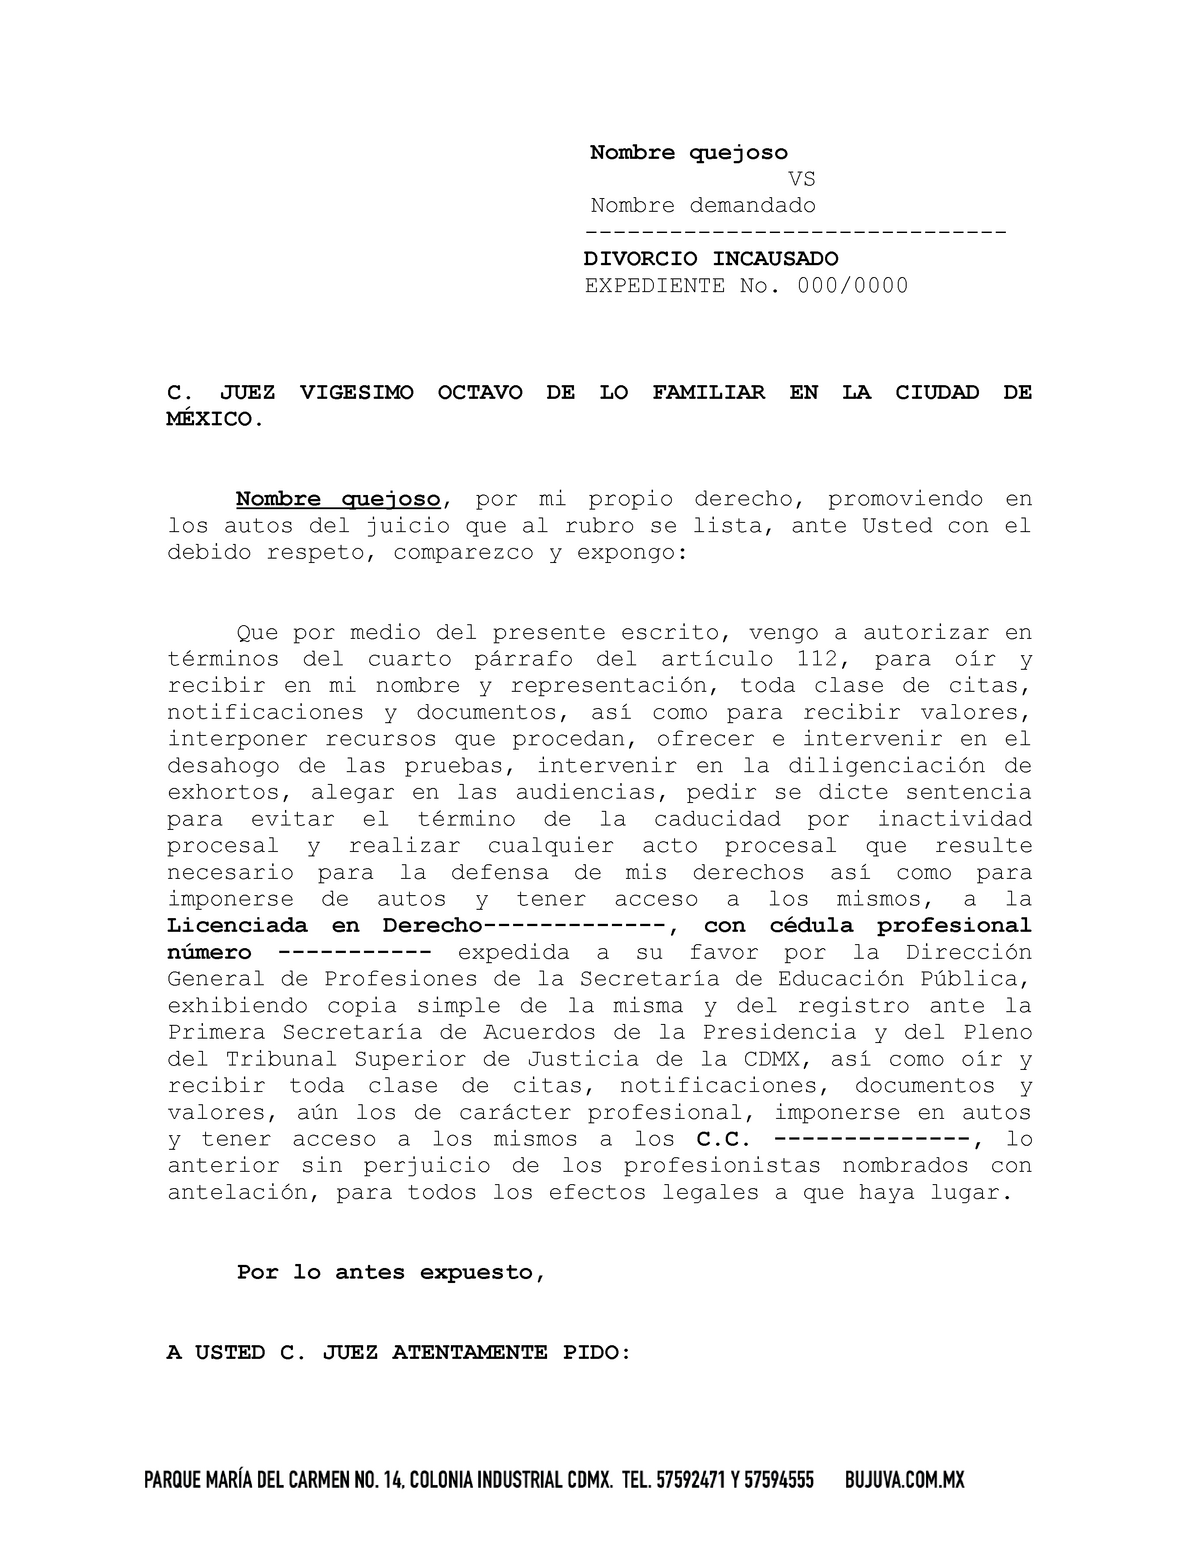 Escrito Autorizacion Abogado y personas autorizadas - Nombre quejoso VS  Nombre demandado - DIVORCIO - Studocu